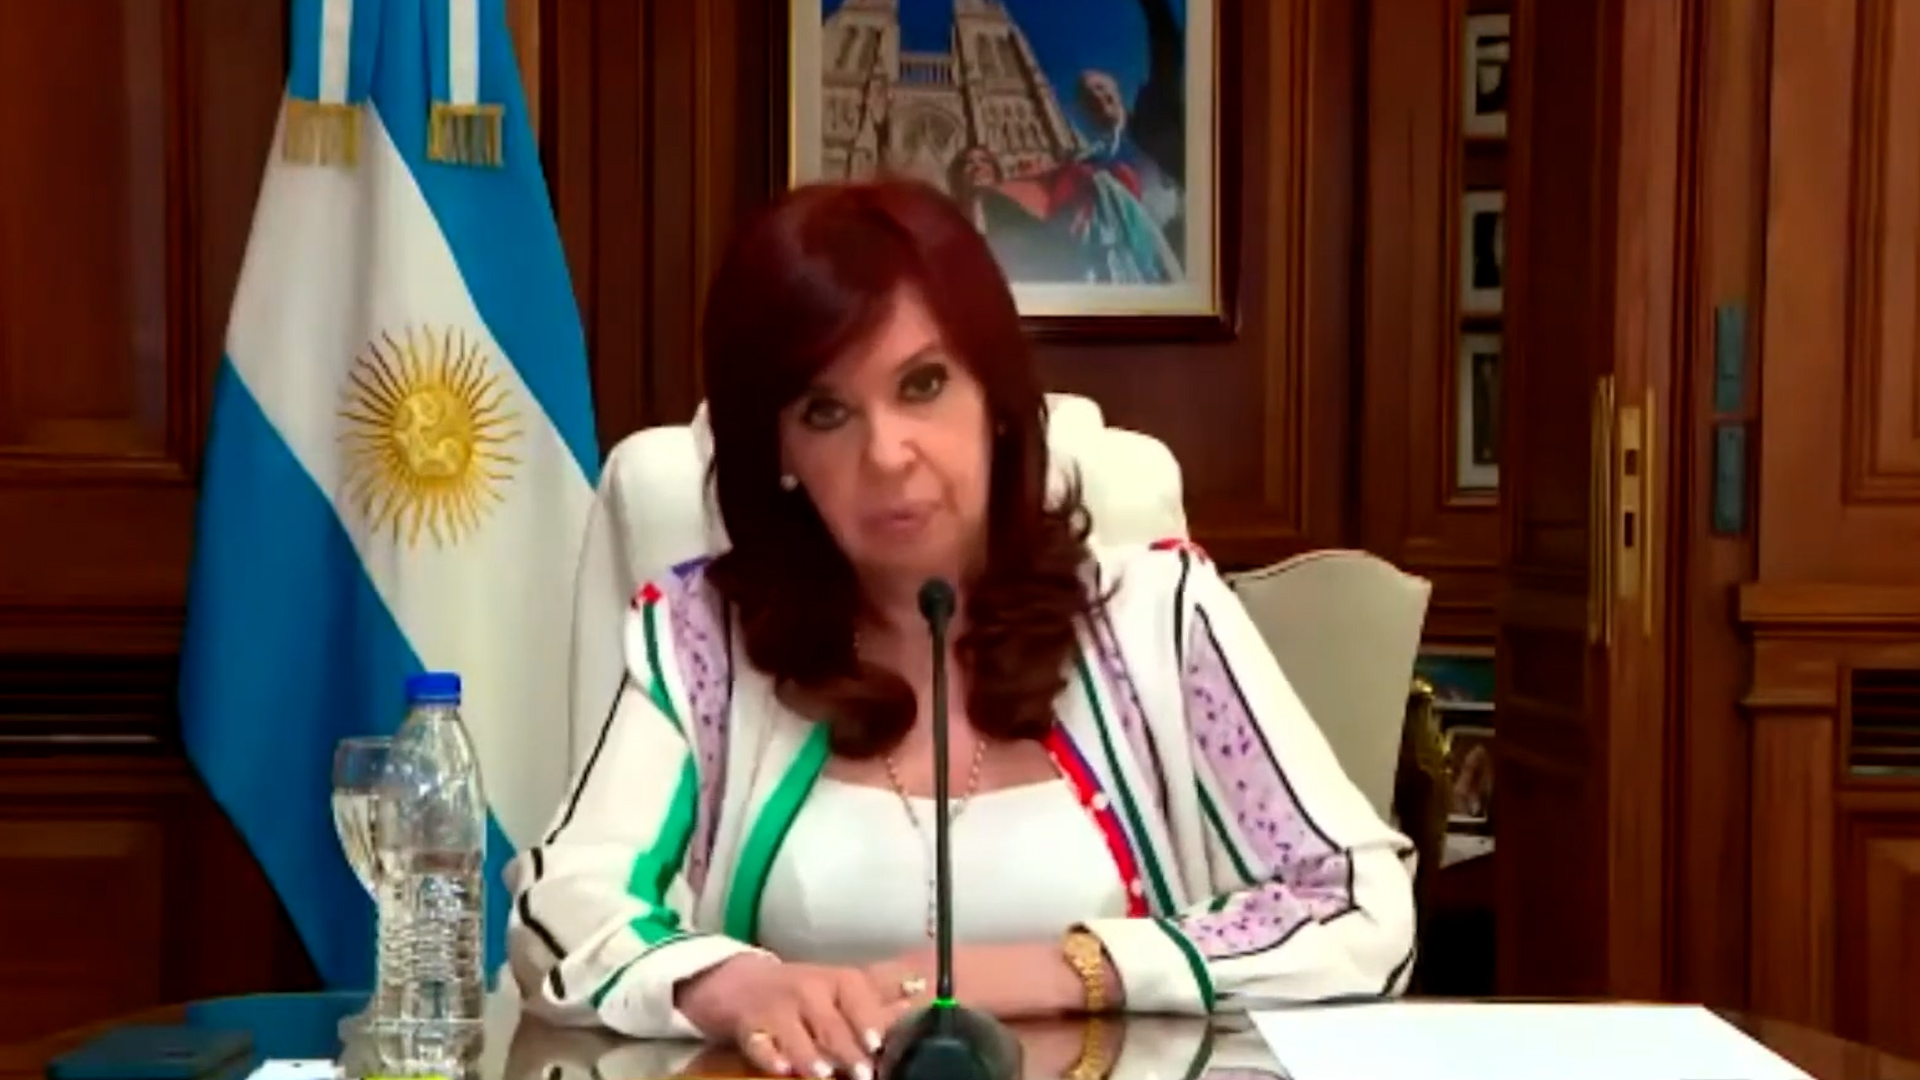 El próximo martes se conocerá el veredicto de la causa Vialidad en la que fue juzgada Cristina Fernández de Kirchner